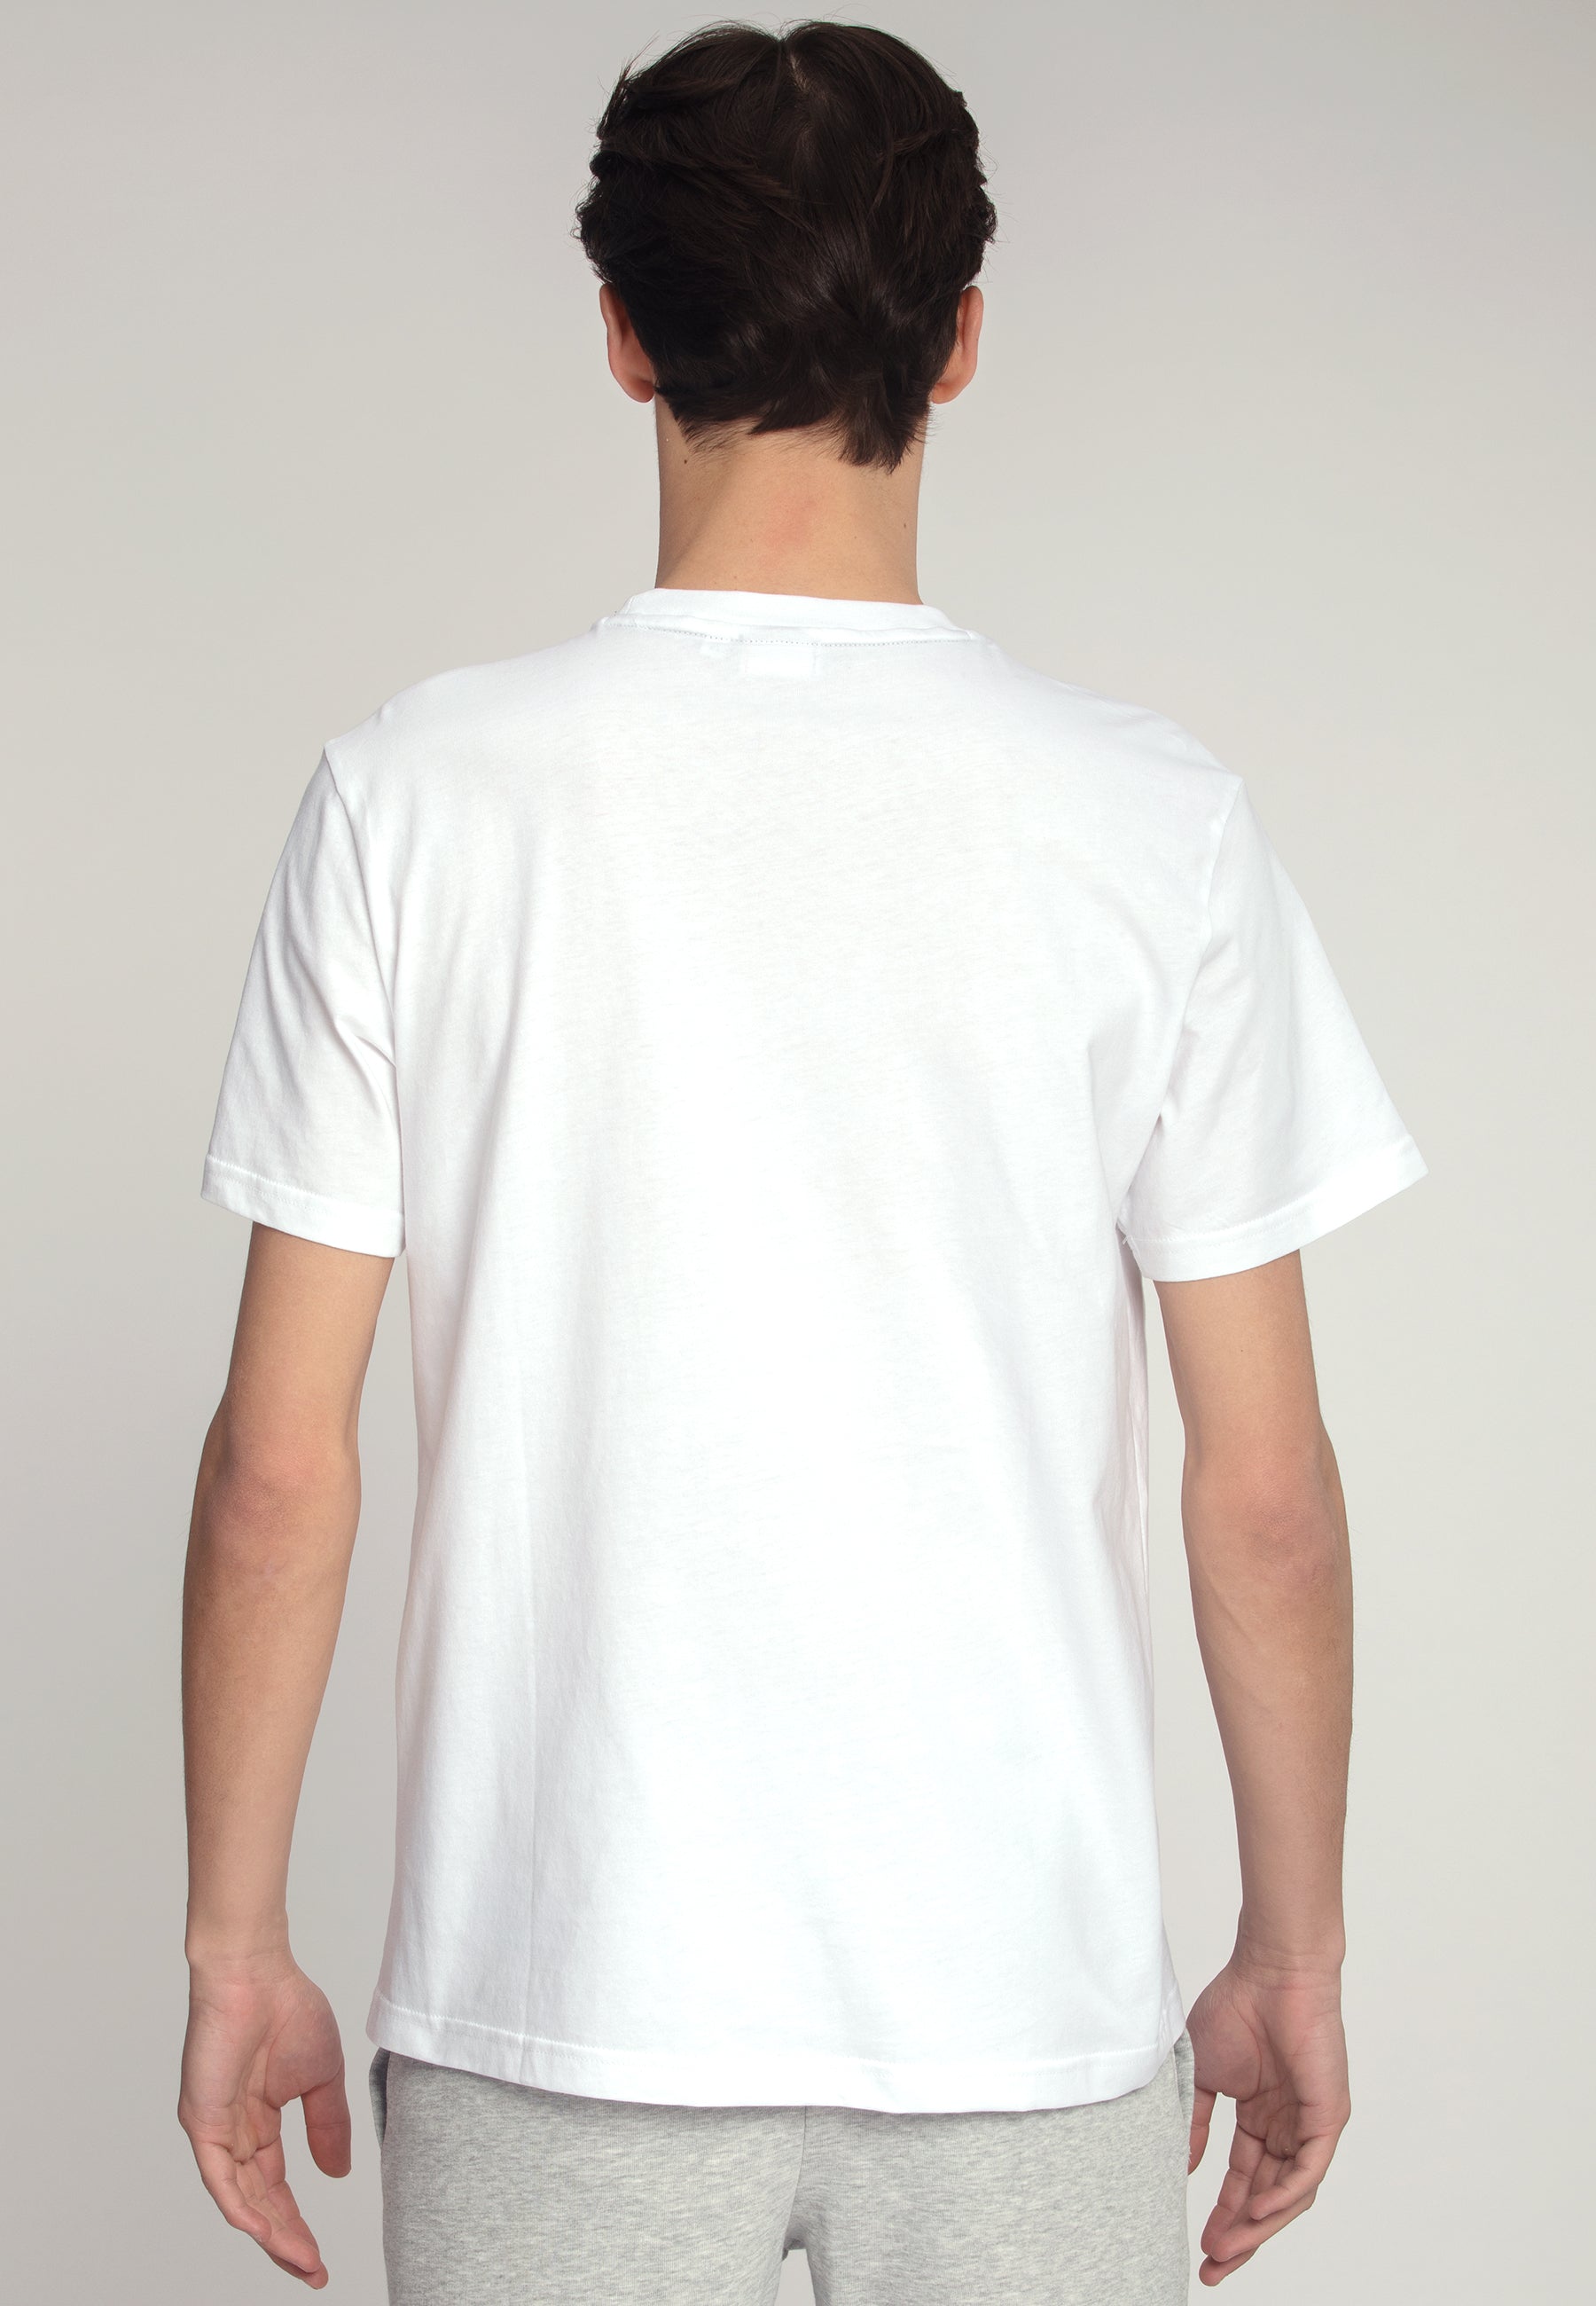 Berloz Tee in Bright White T-Shirts Fila   